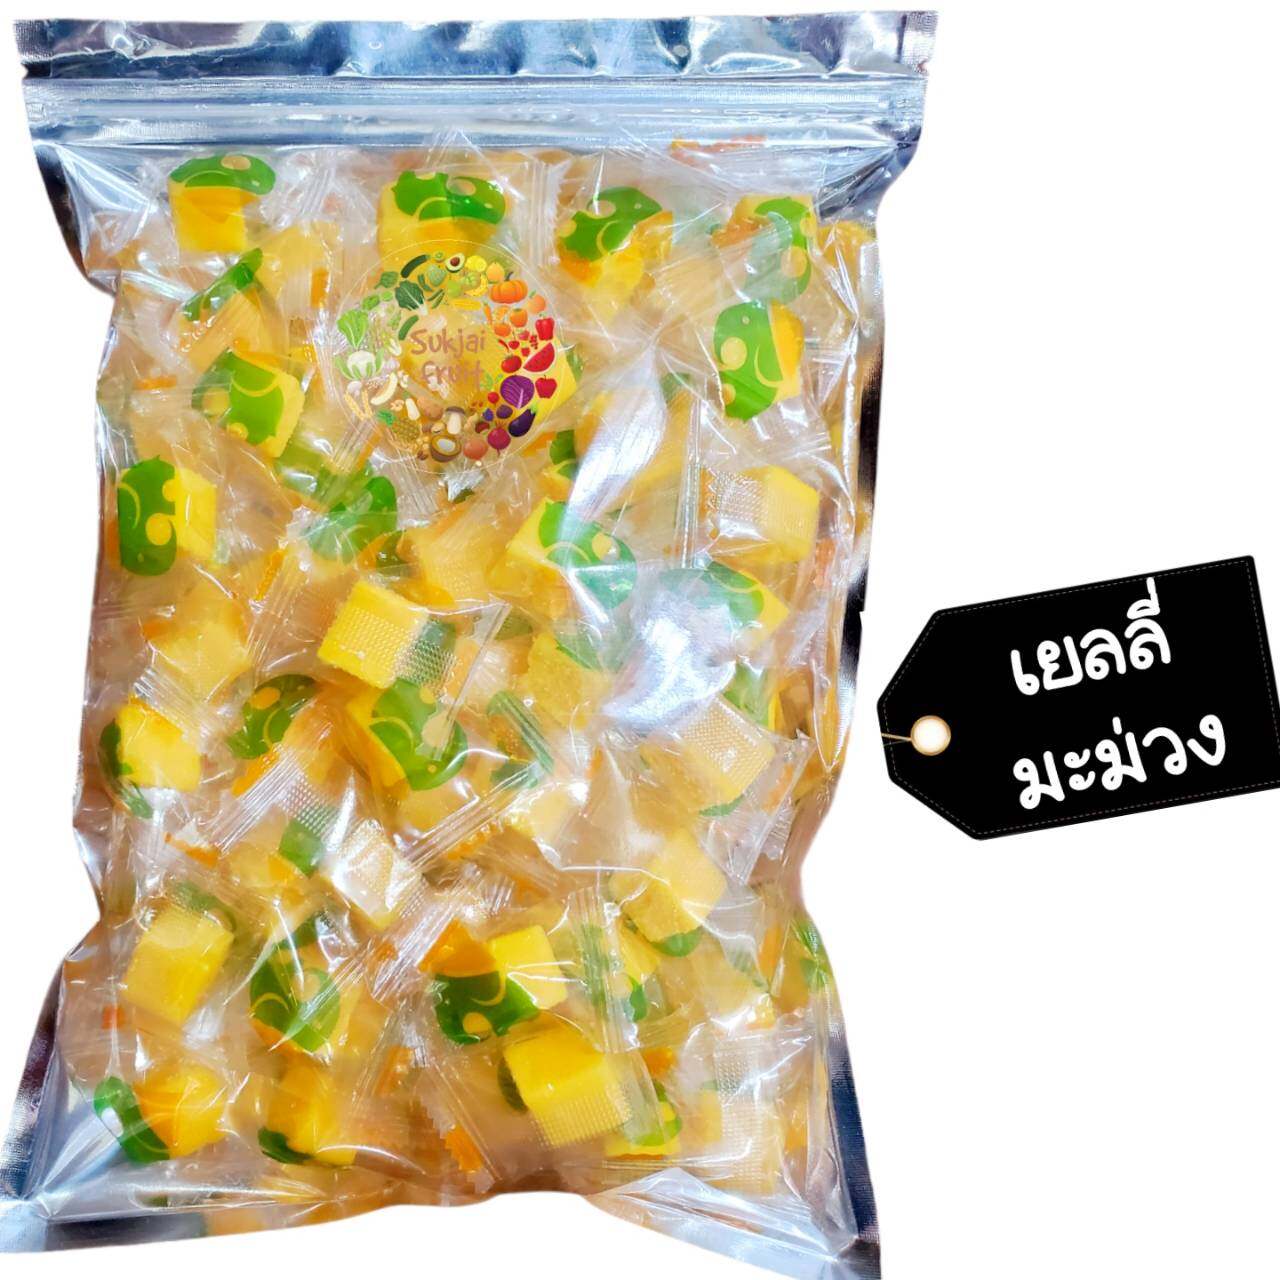 เยลลี่ มะม่วง น้ำดอกไม้ 500 กรัม (120 เม็ด) Jelly mango 500 g  - Dried fruit ผลไม้ อบแห้ง ขนมไทย ขนม OTOP บ๊วย ผลไม้อบแห้ง บ๊วย ผลไม้อบแห้ง